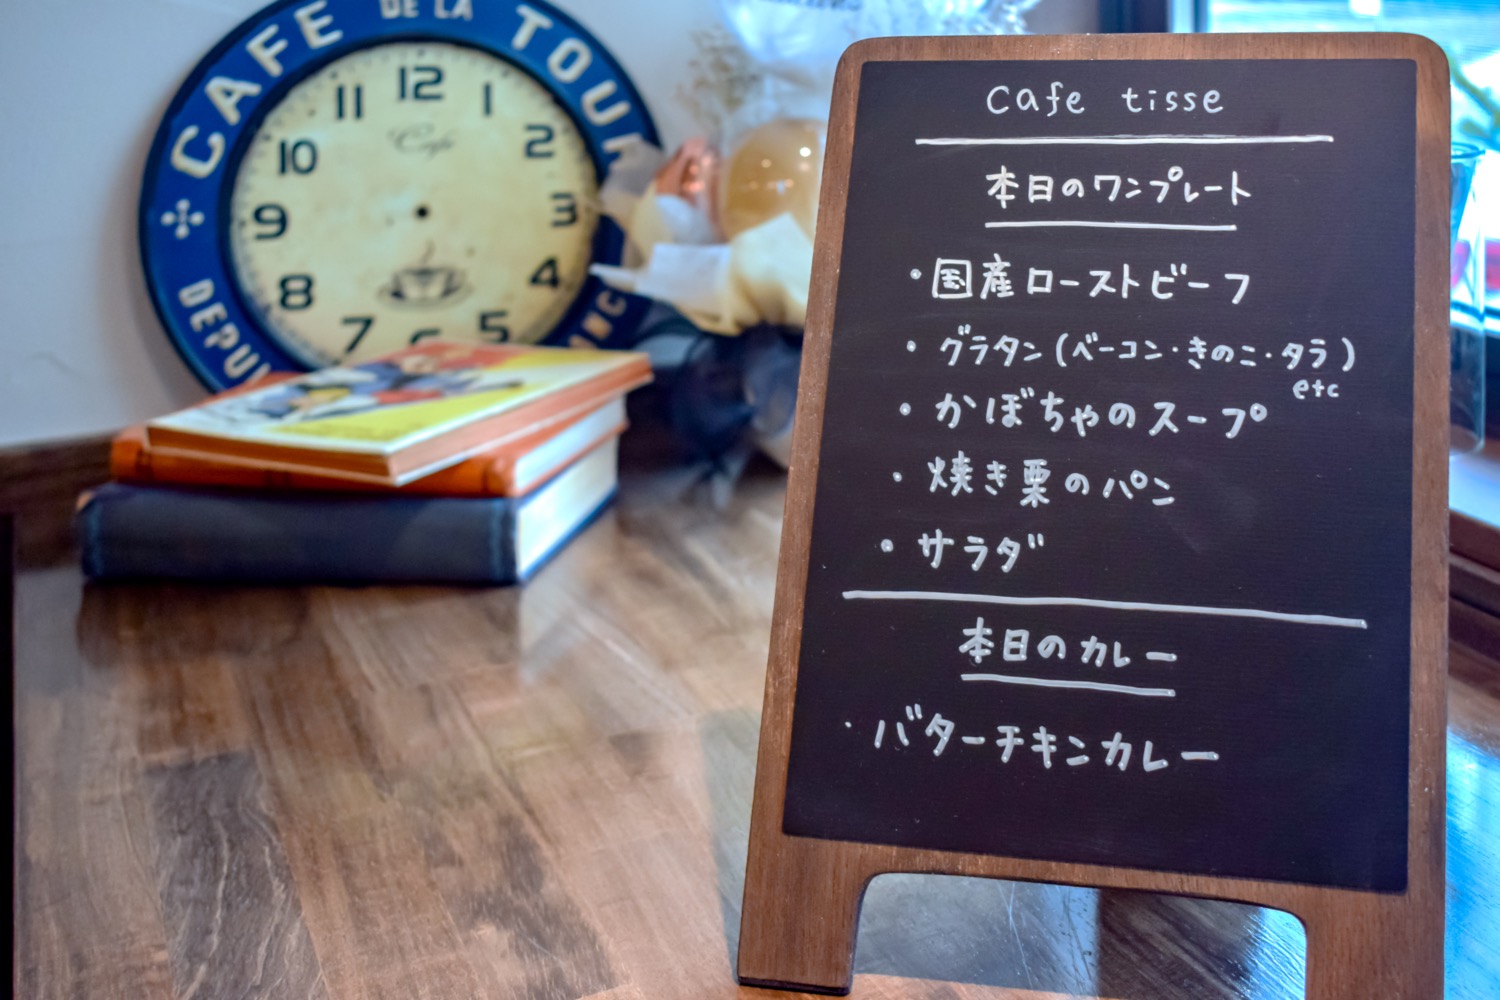 Cafe tisse